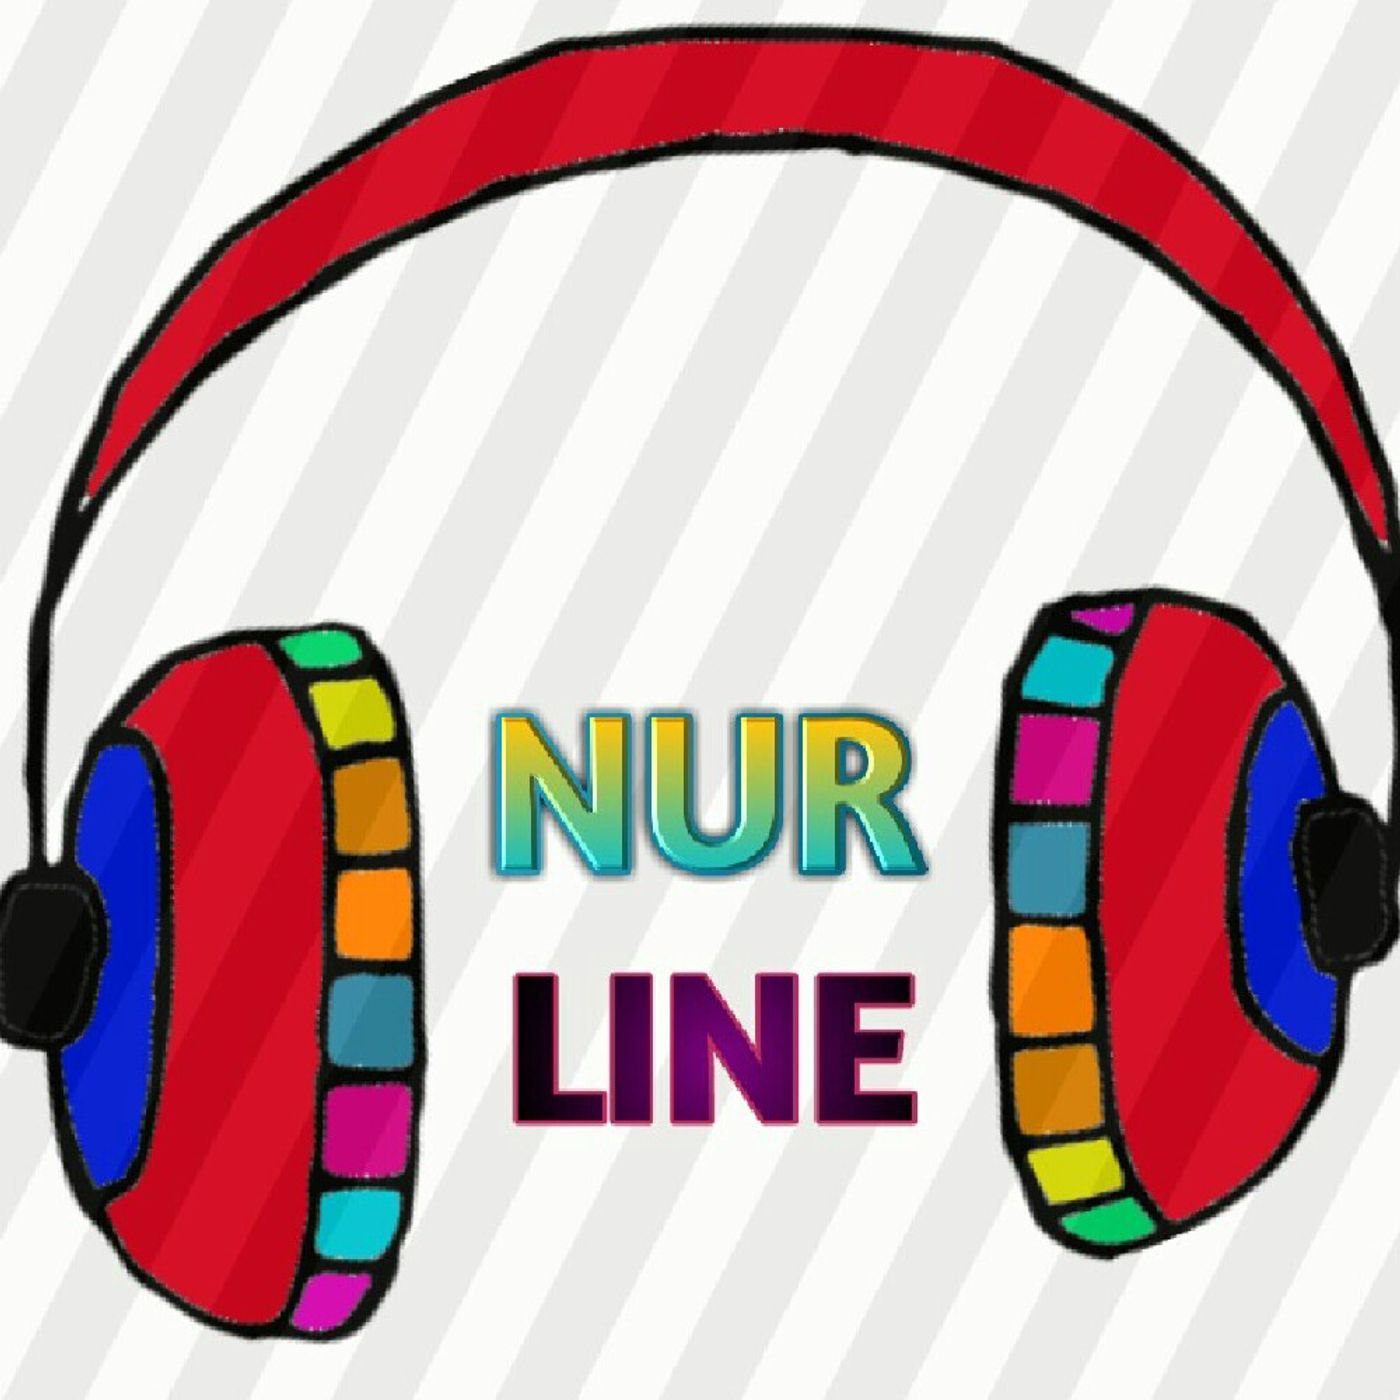 NUR_LINE RADIO